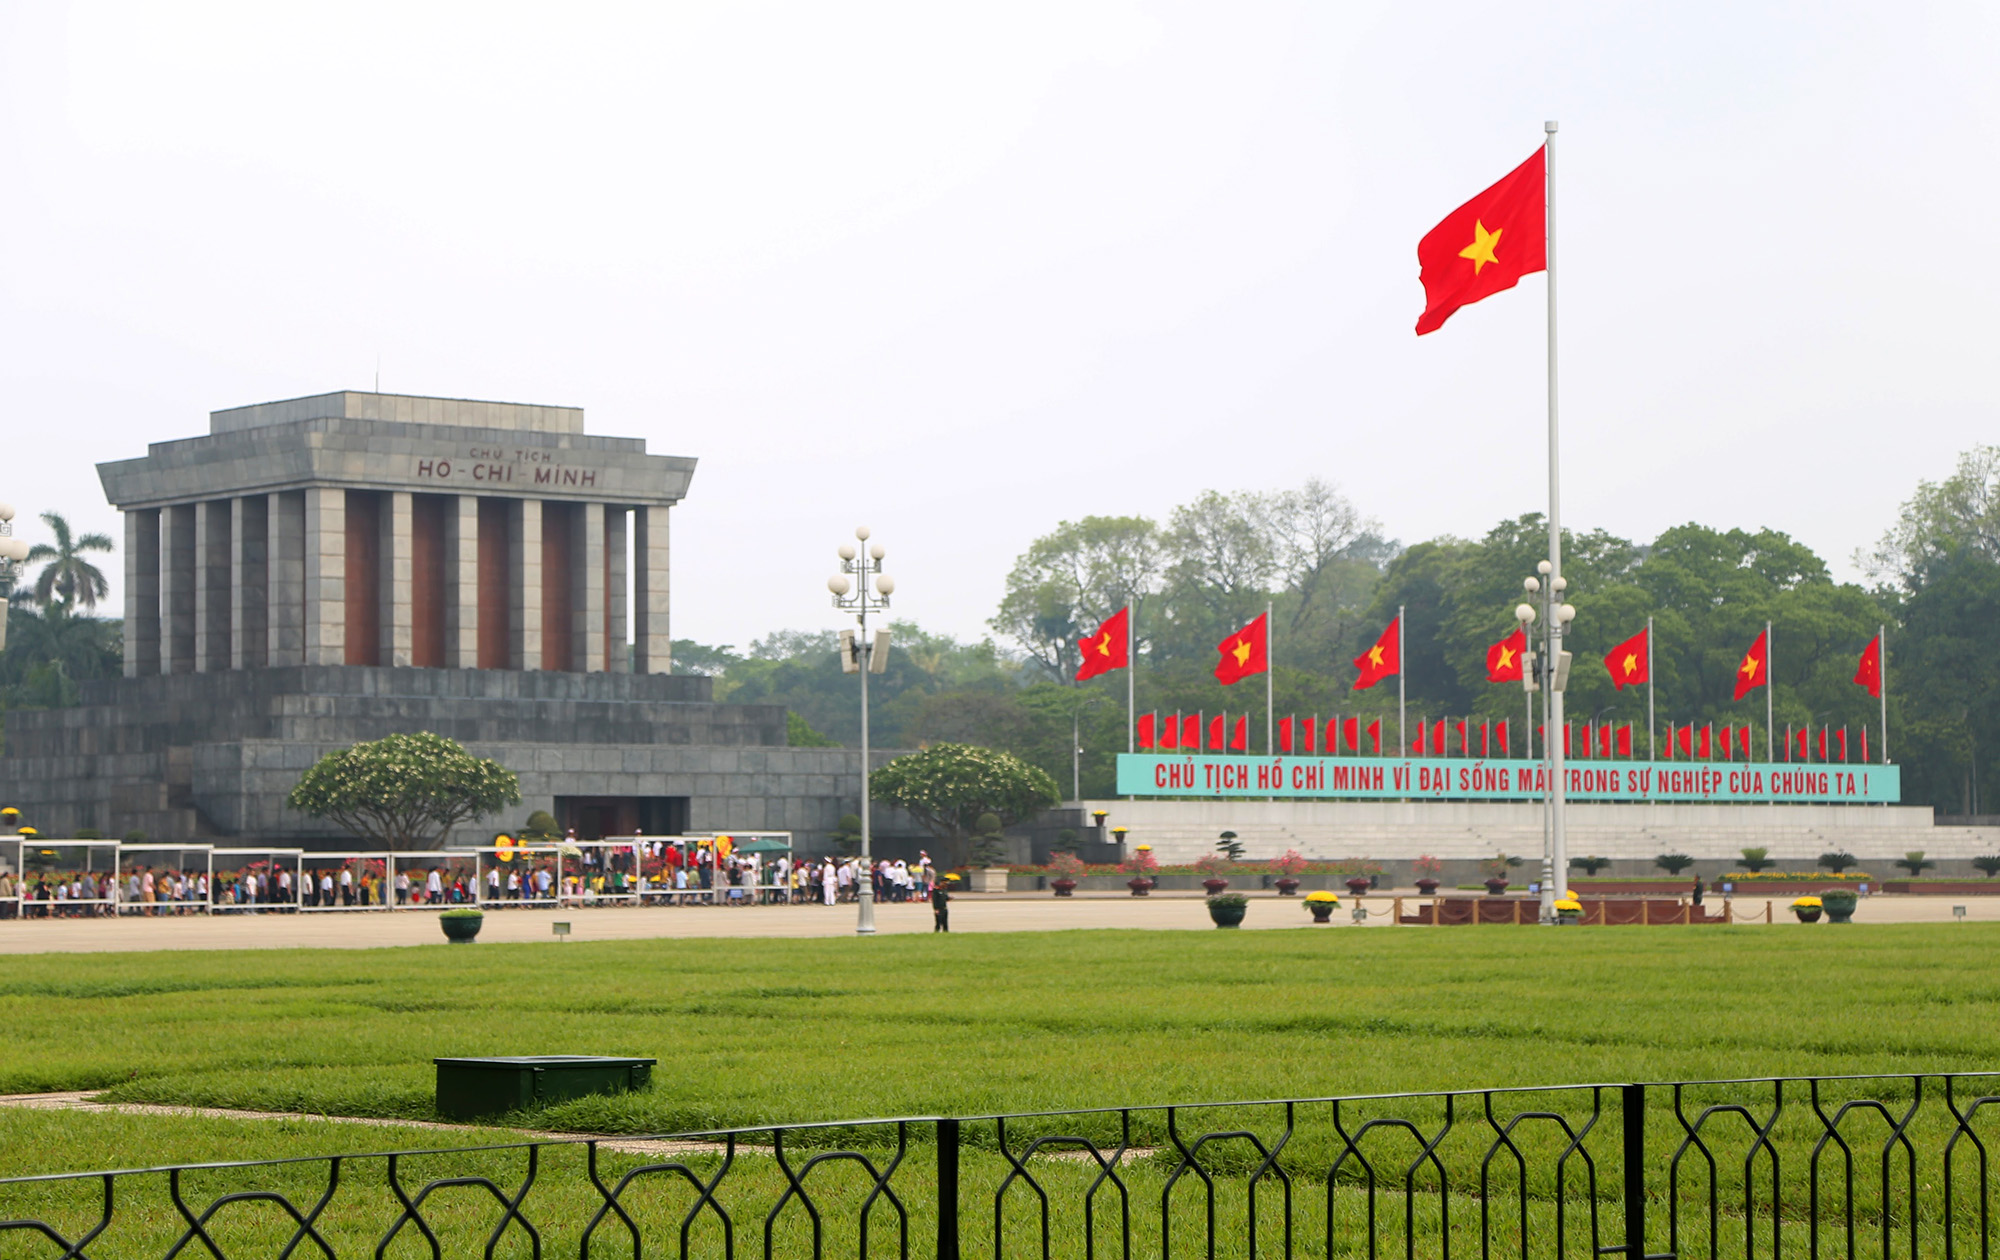 Quảng trường Ba Đình - Quảng trường lớn nhất Việt Nam